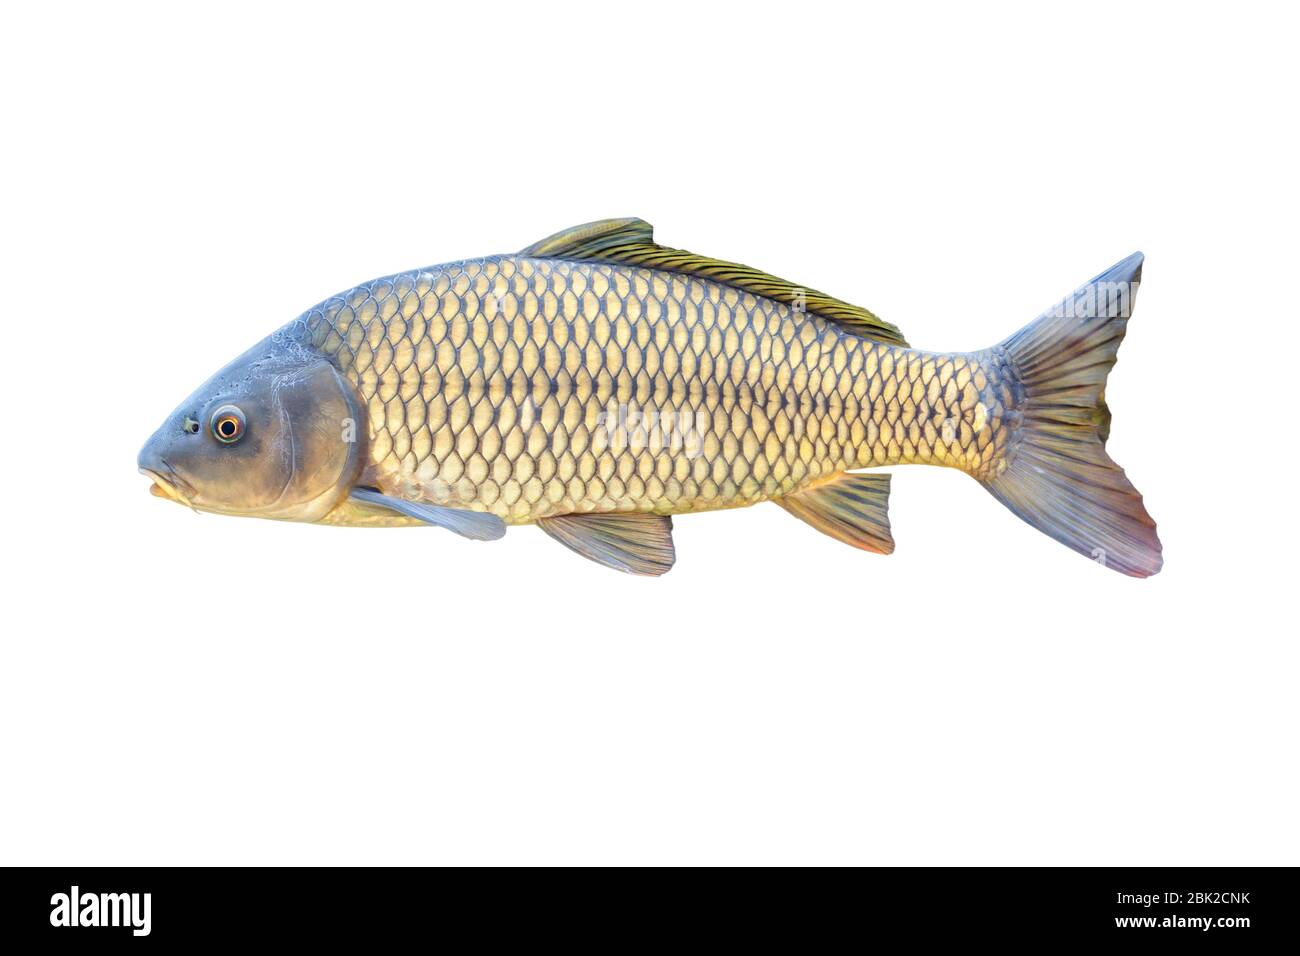 Carpa europea o Cyprinus carpio, una specie di pesci d'acqua dolce. Isolato su bianco Foto Stock